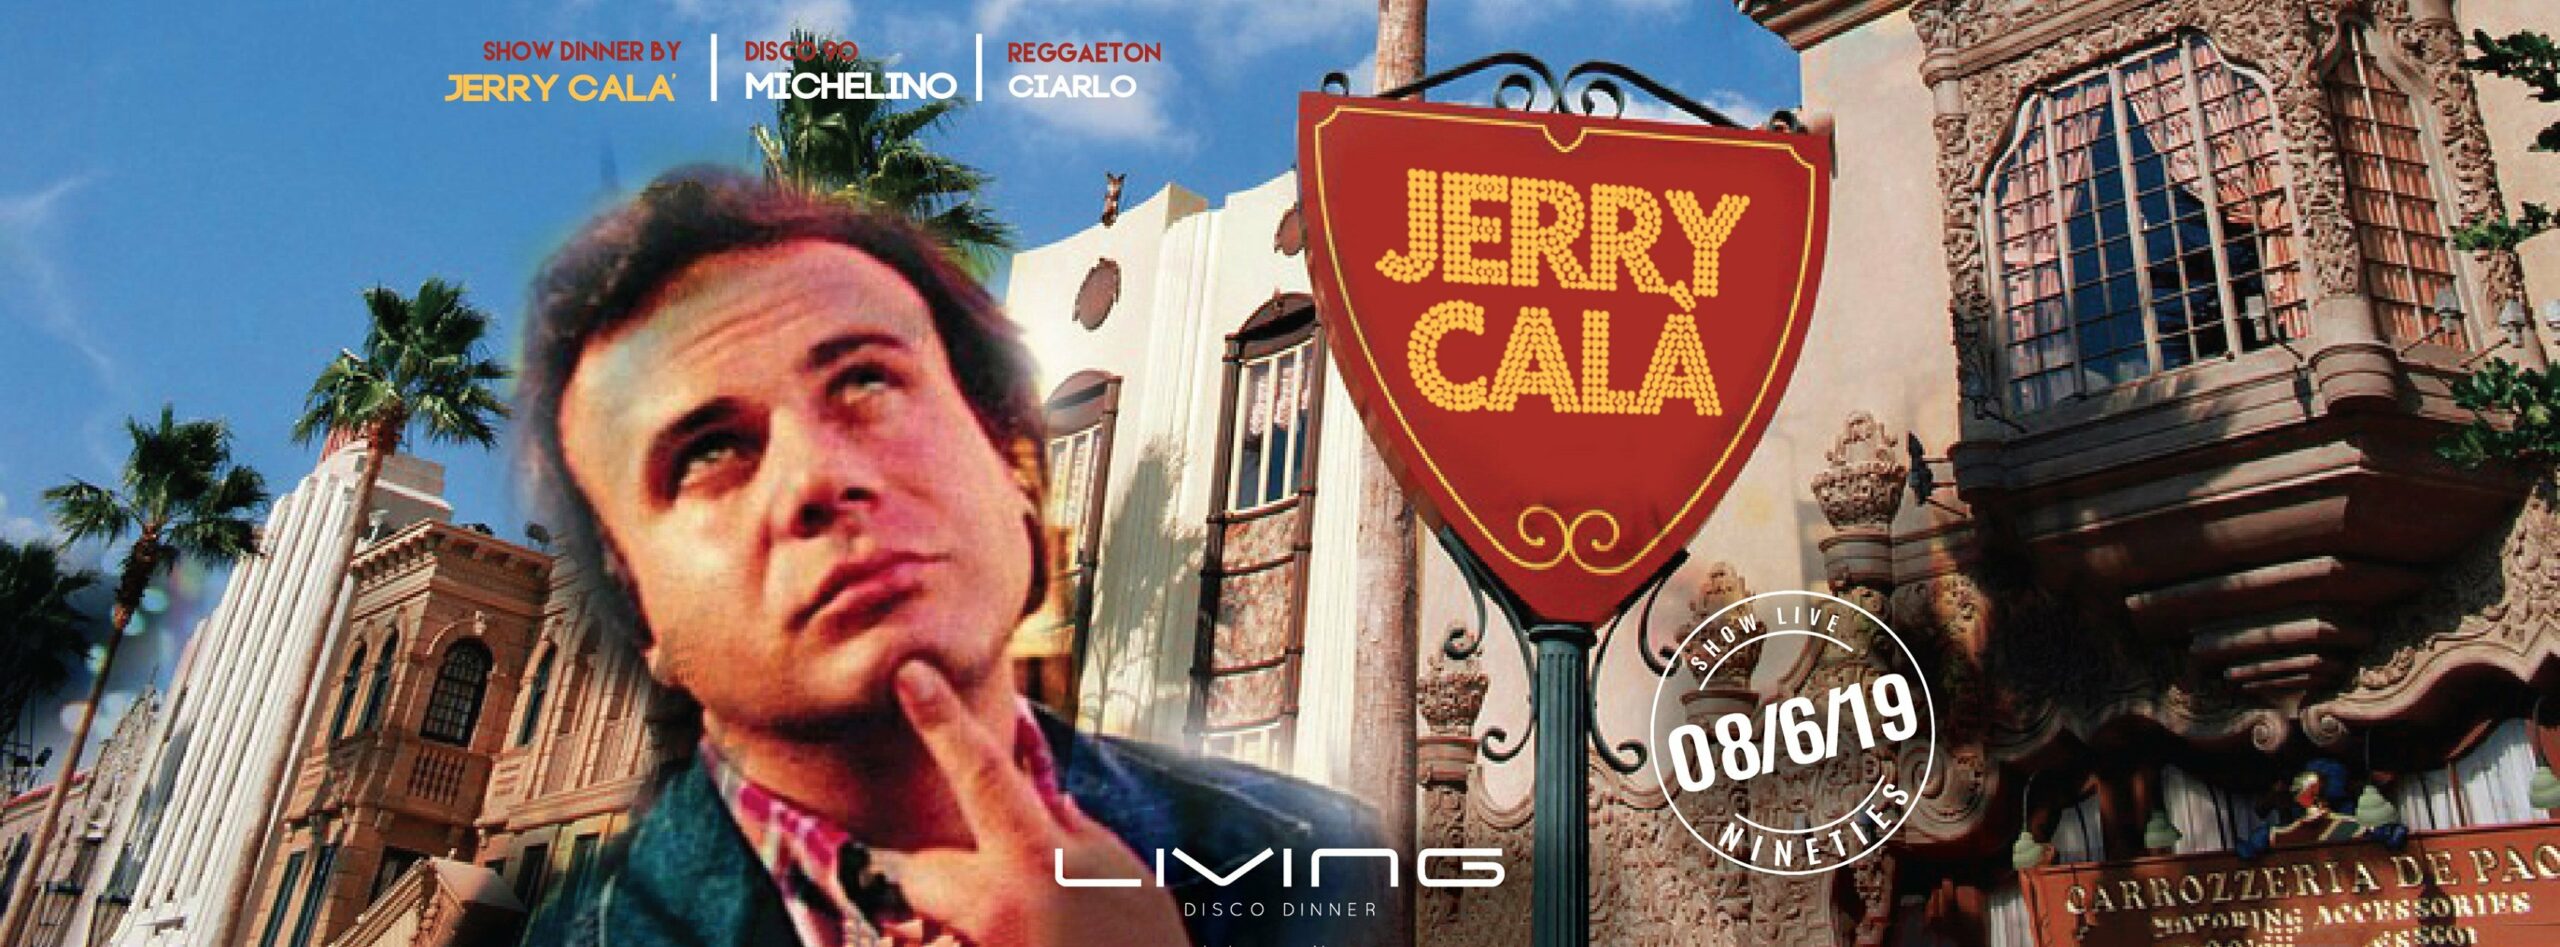 Jerry Calà Living Misano Adriatico